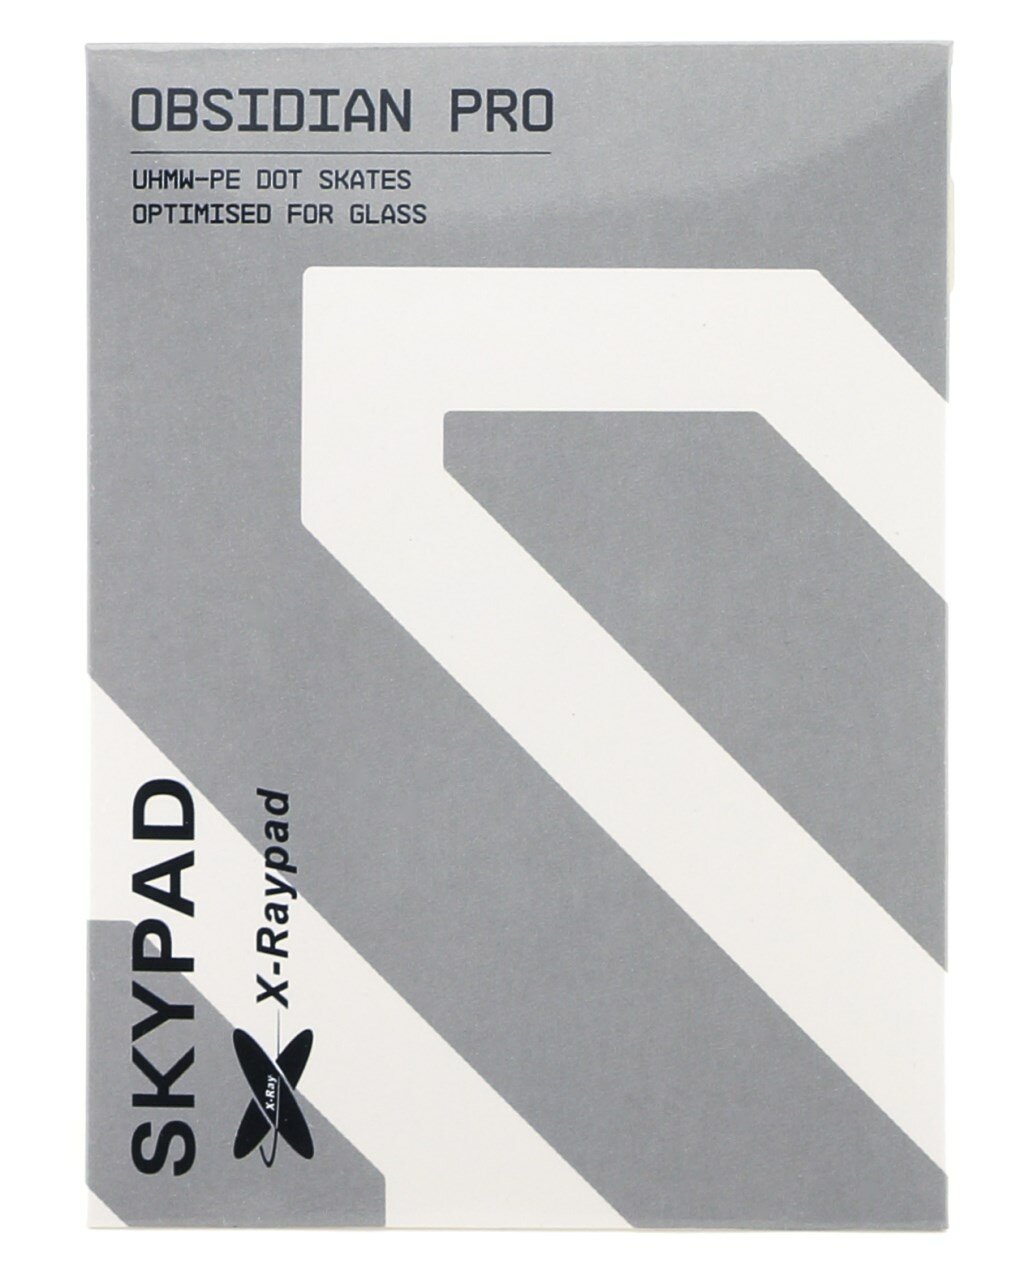 Ножки для мыши (глайды) SkyPAD x X-Raypad Obsidian PRO UHMW-PE Dot Skates, 40шт.